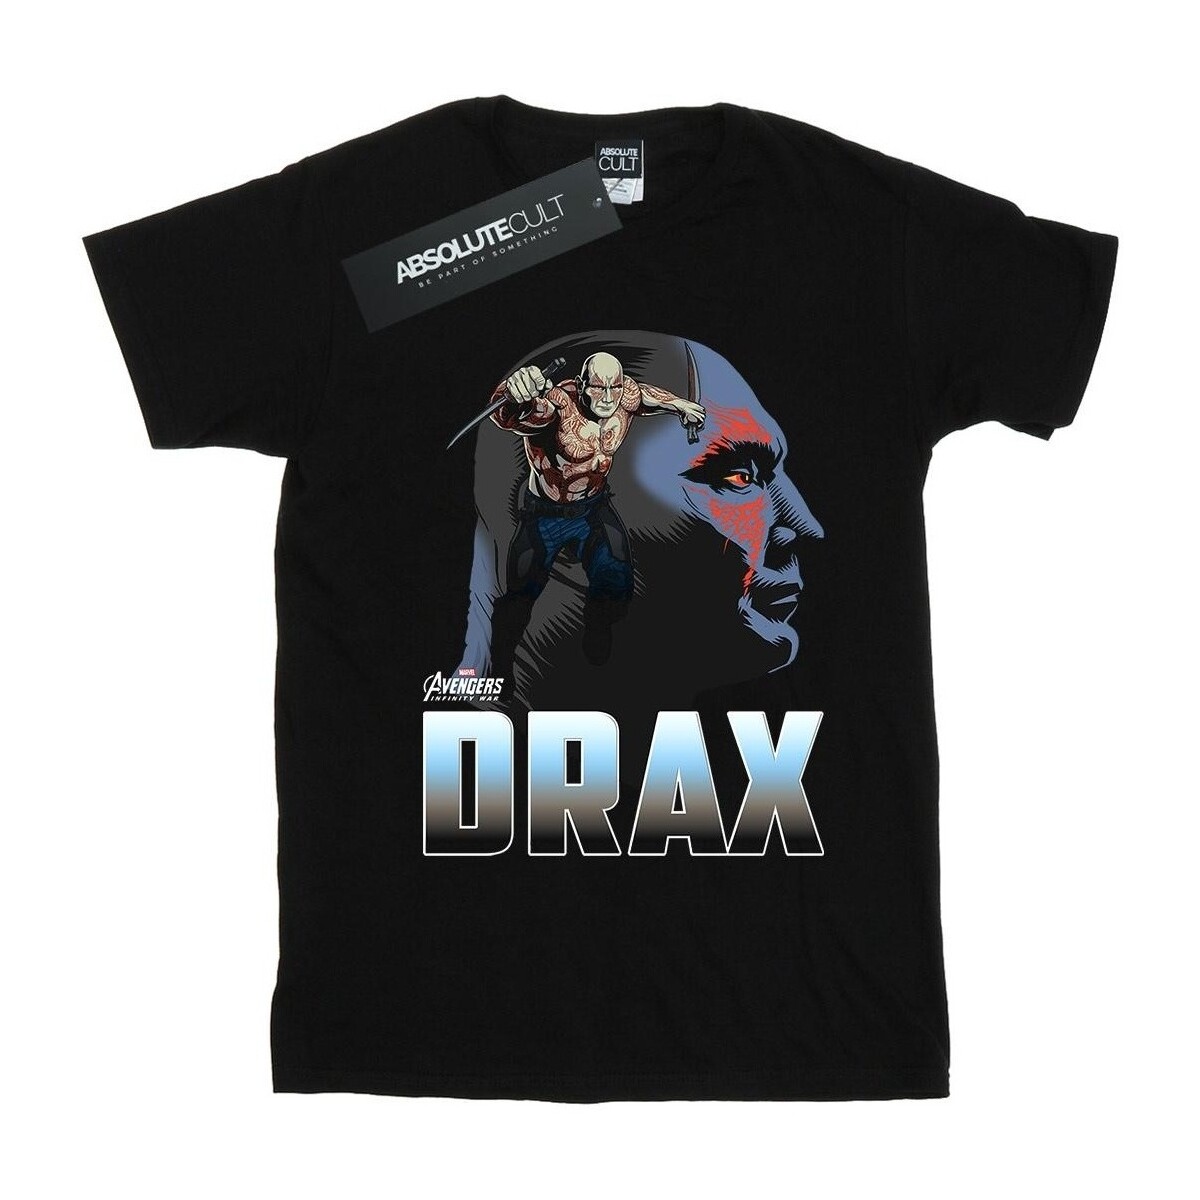 textil Niña Camisetas manga larga Marvel Avengers Infinity War Drax Character Negro